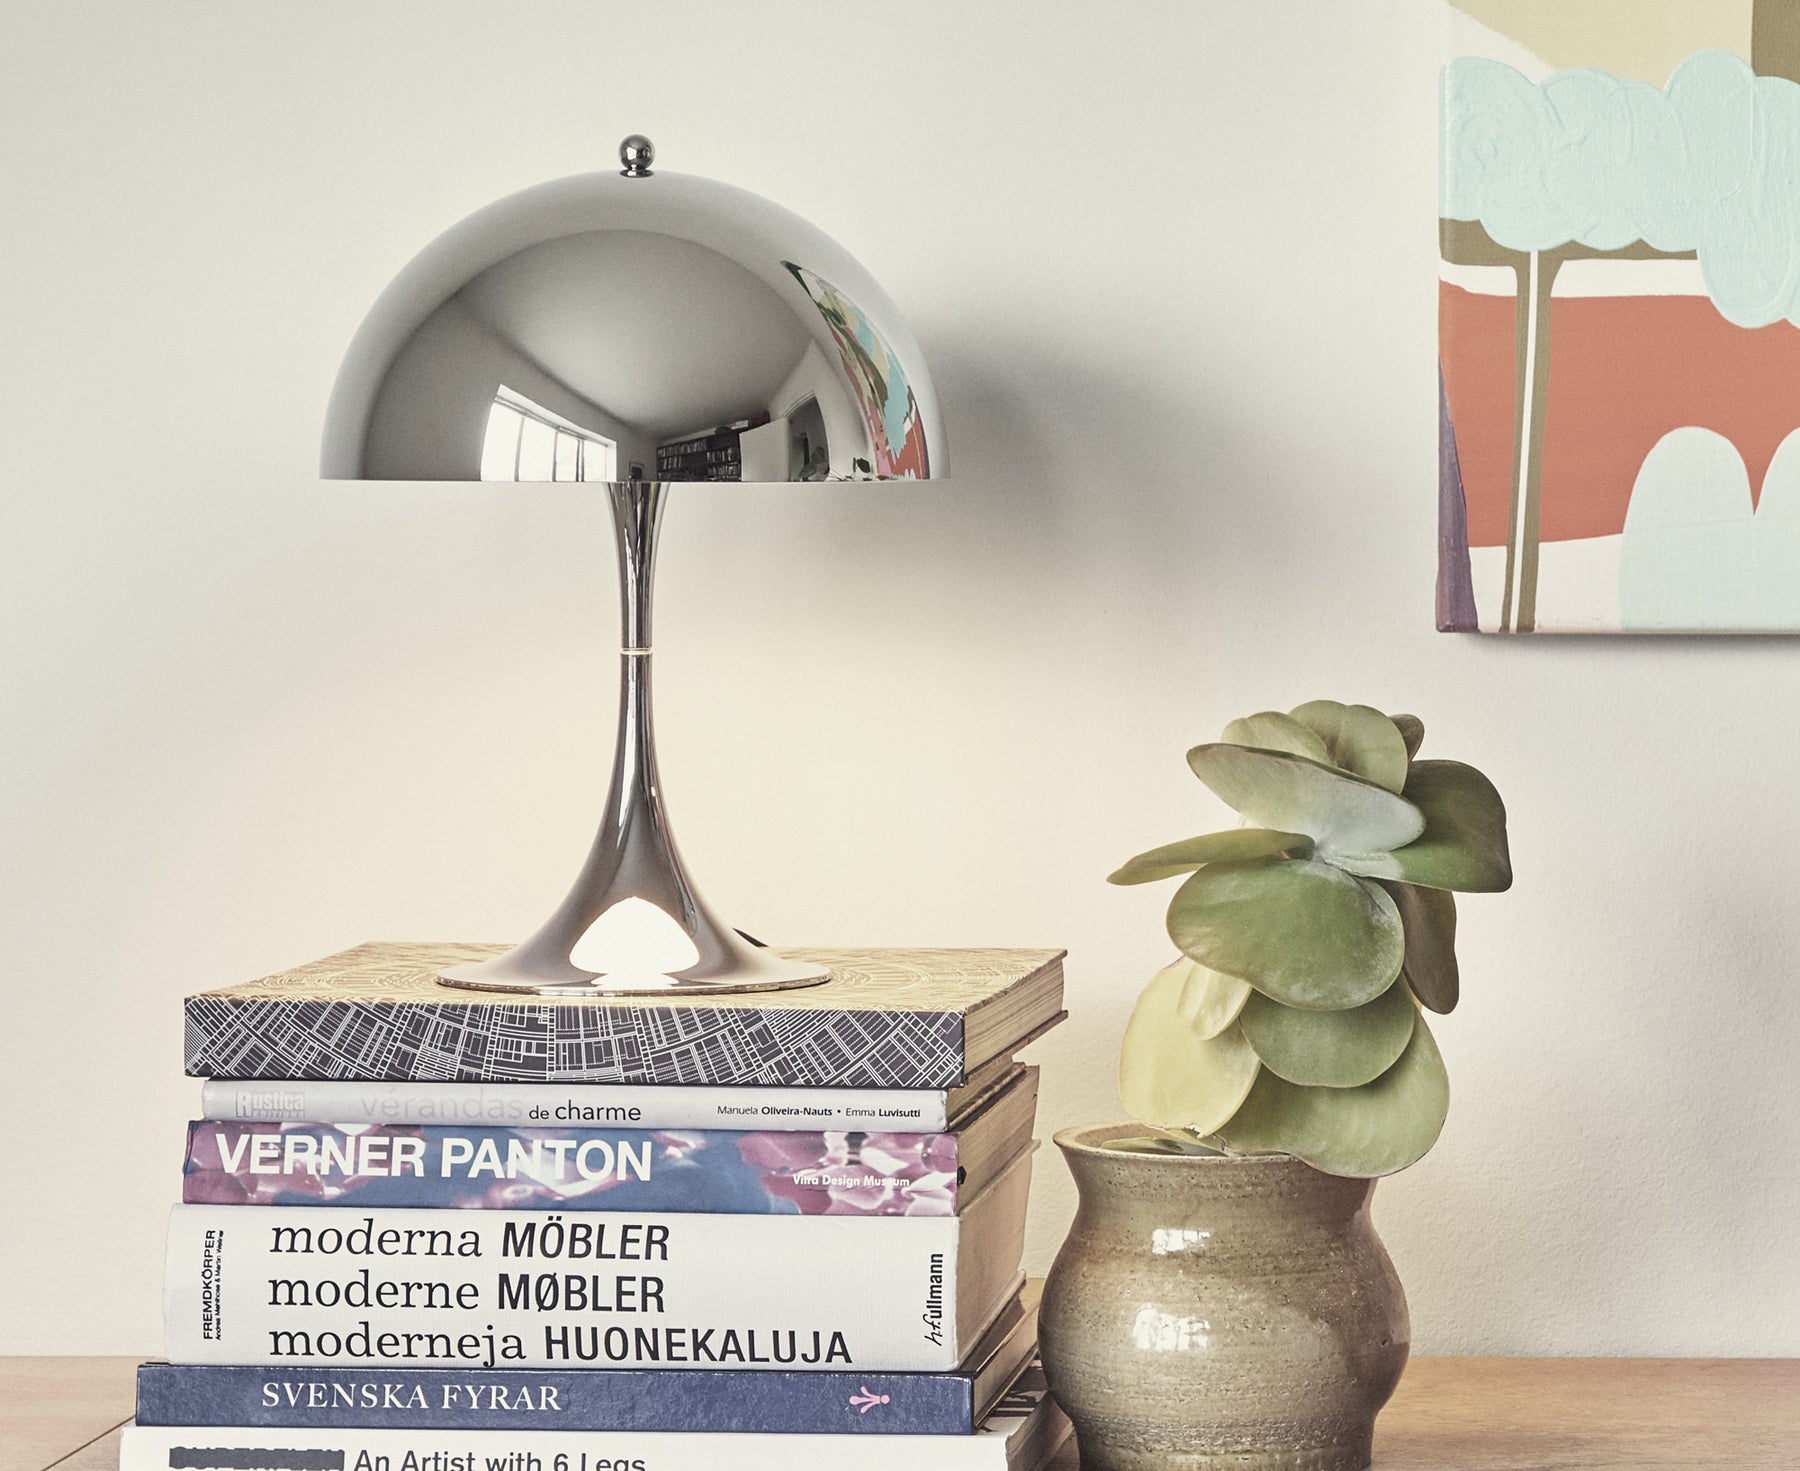 Louis Poulsen Panthella 160 Portable Lamp Grey Opal